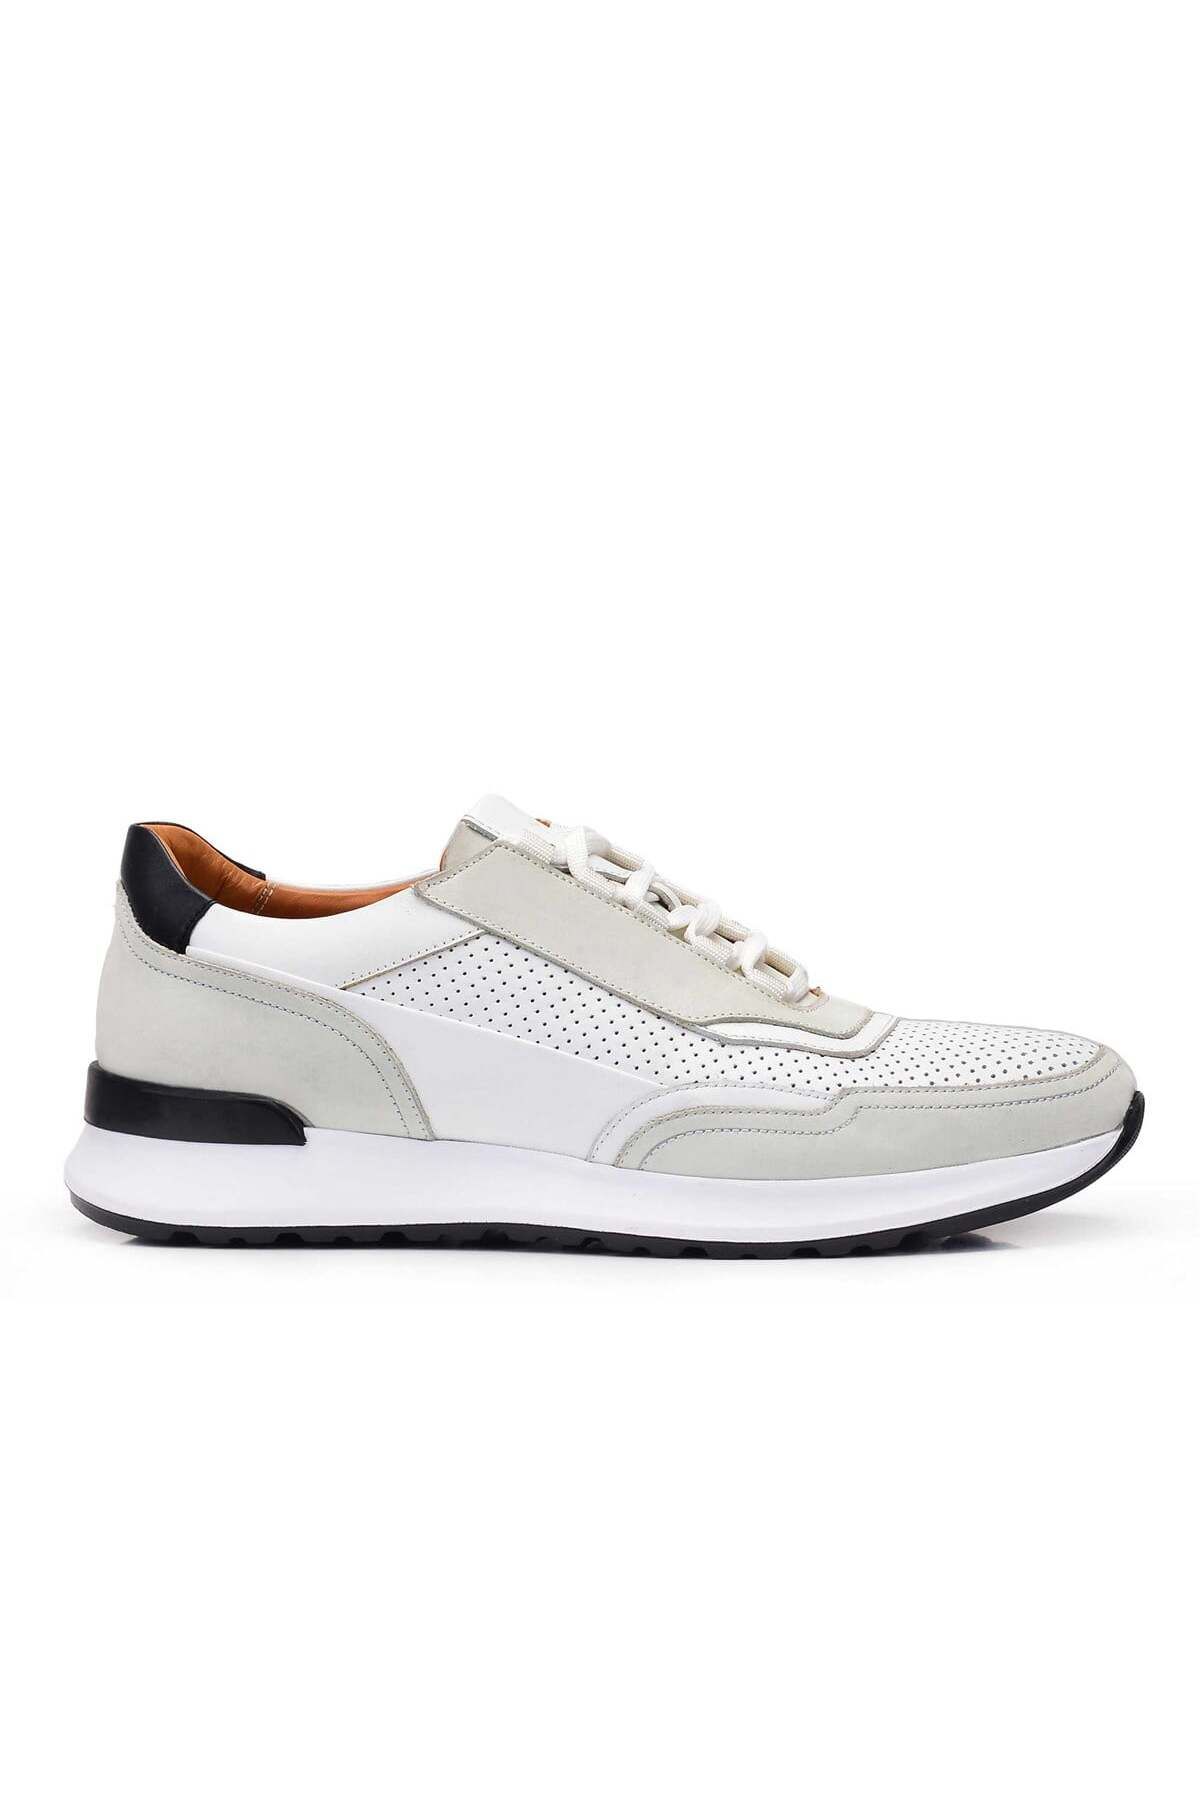 Nevzat Onay Beyaz Bağcıklı Sneaker Erkek Ayakkabı -11779-